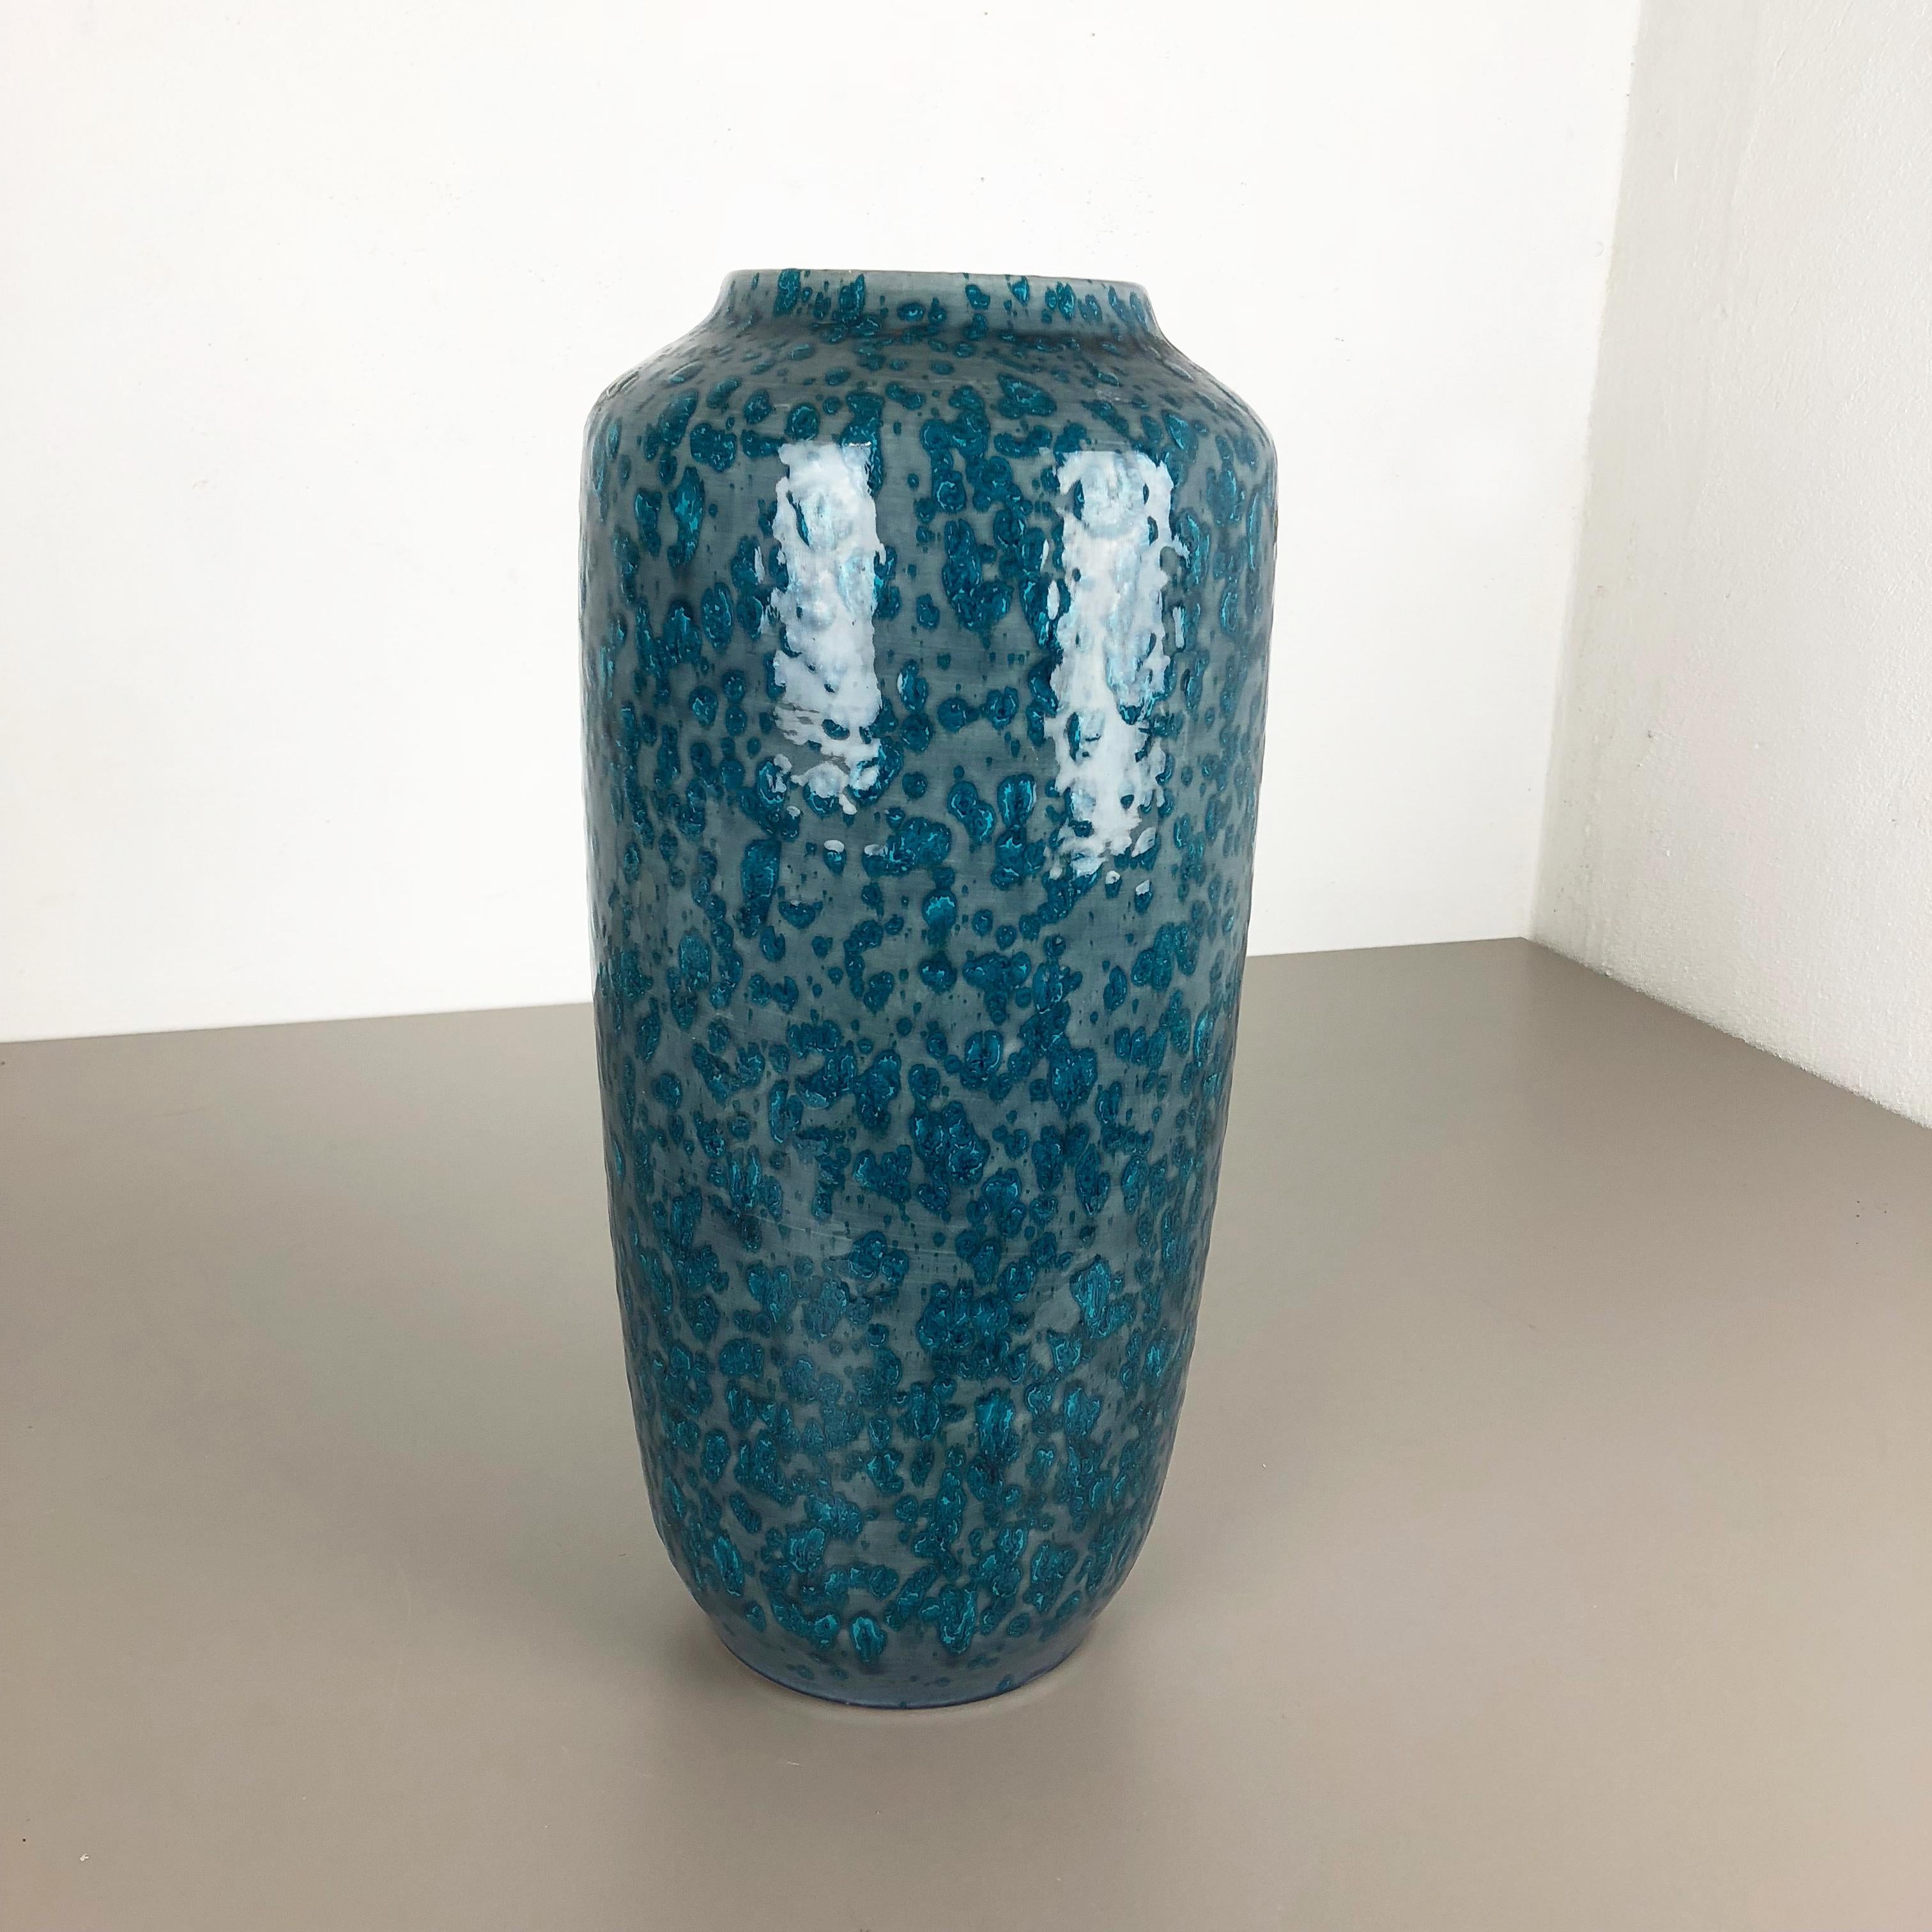 Artikel:

Fat Lava Art Vase extra große Version


Modell: 517-45


Produzent:

Scheurich, Deutschland



Jahrzehnt:

1970s


Diese originelle Vintage-Vase wurde in den 1970er Jahren in Deutschland hergestellt. Es ist aus Keramik